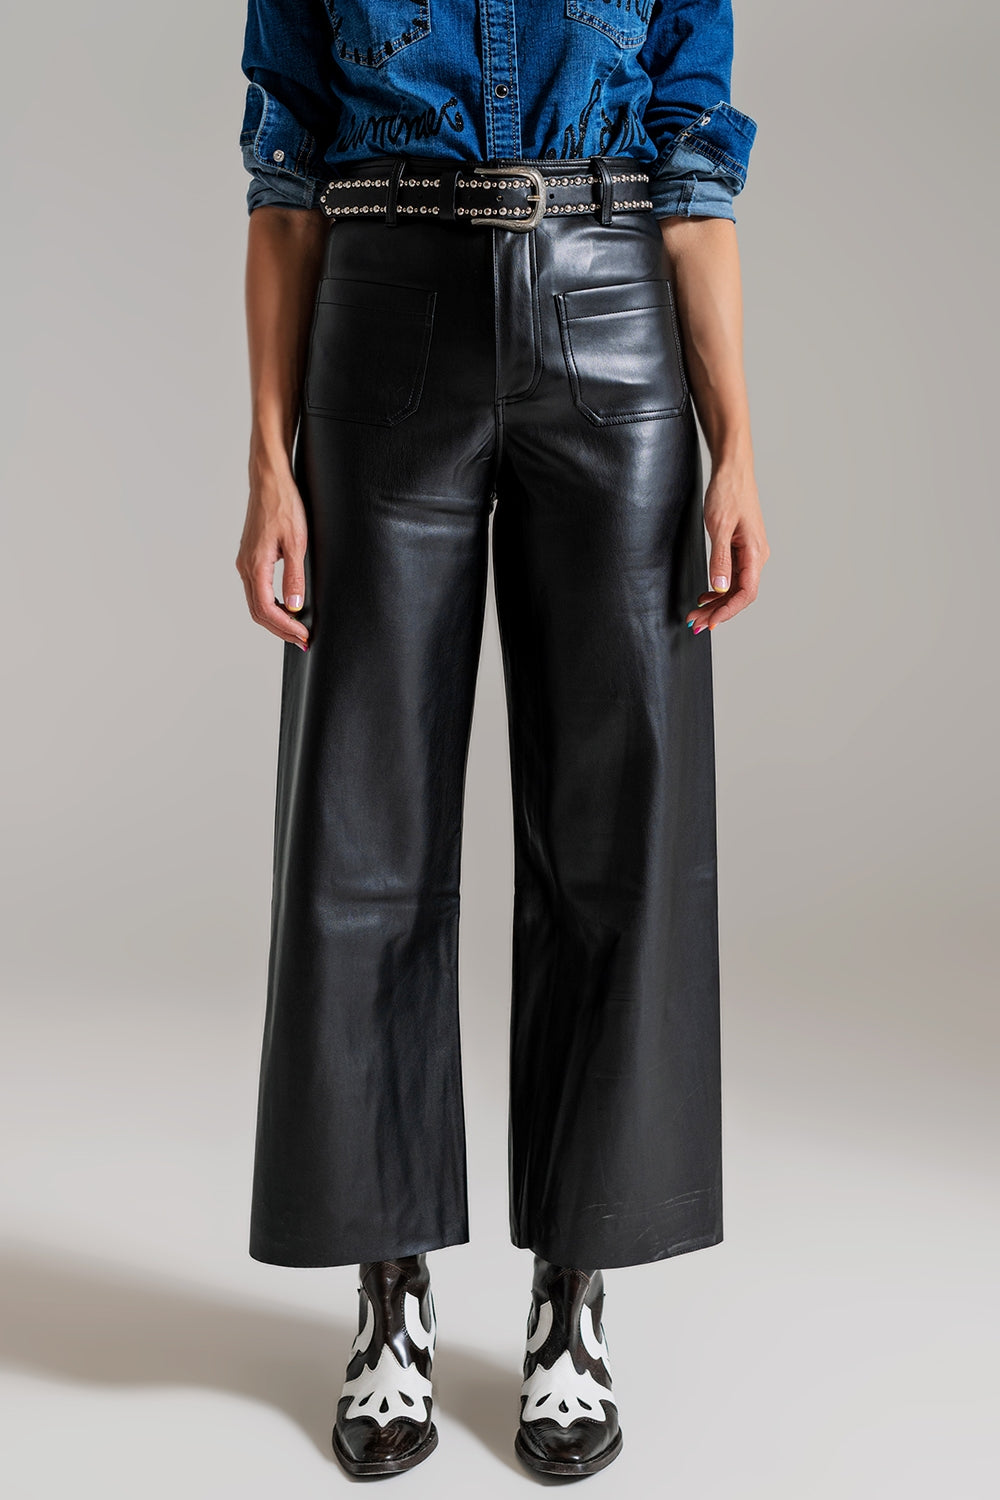 Q2 pantaloni in ecopelle nera stile palazzo con dettaglio tasche